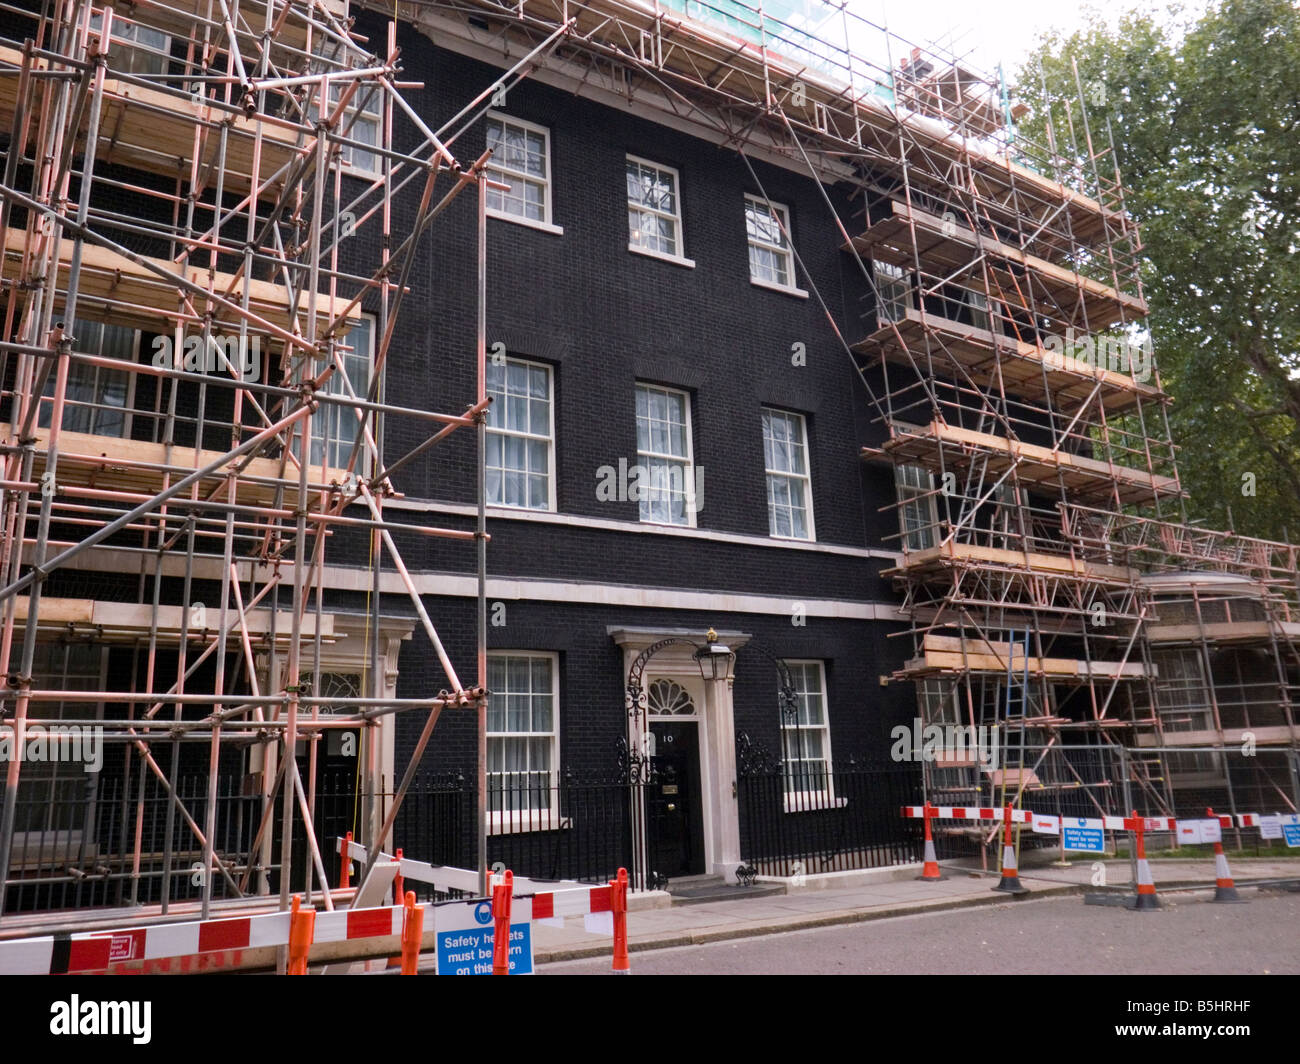 Numéro 10 Downing Street, Londres. Résidence du Premier ministre britannique, en cours de maintenance - Septembre 2008 Banque D'Images